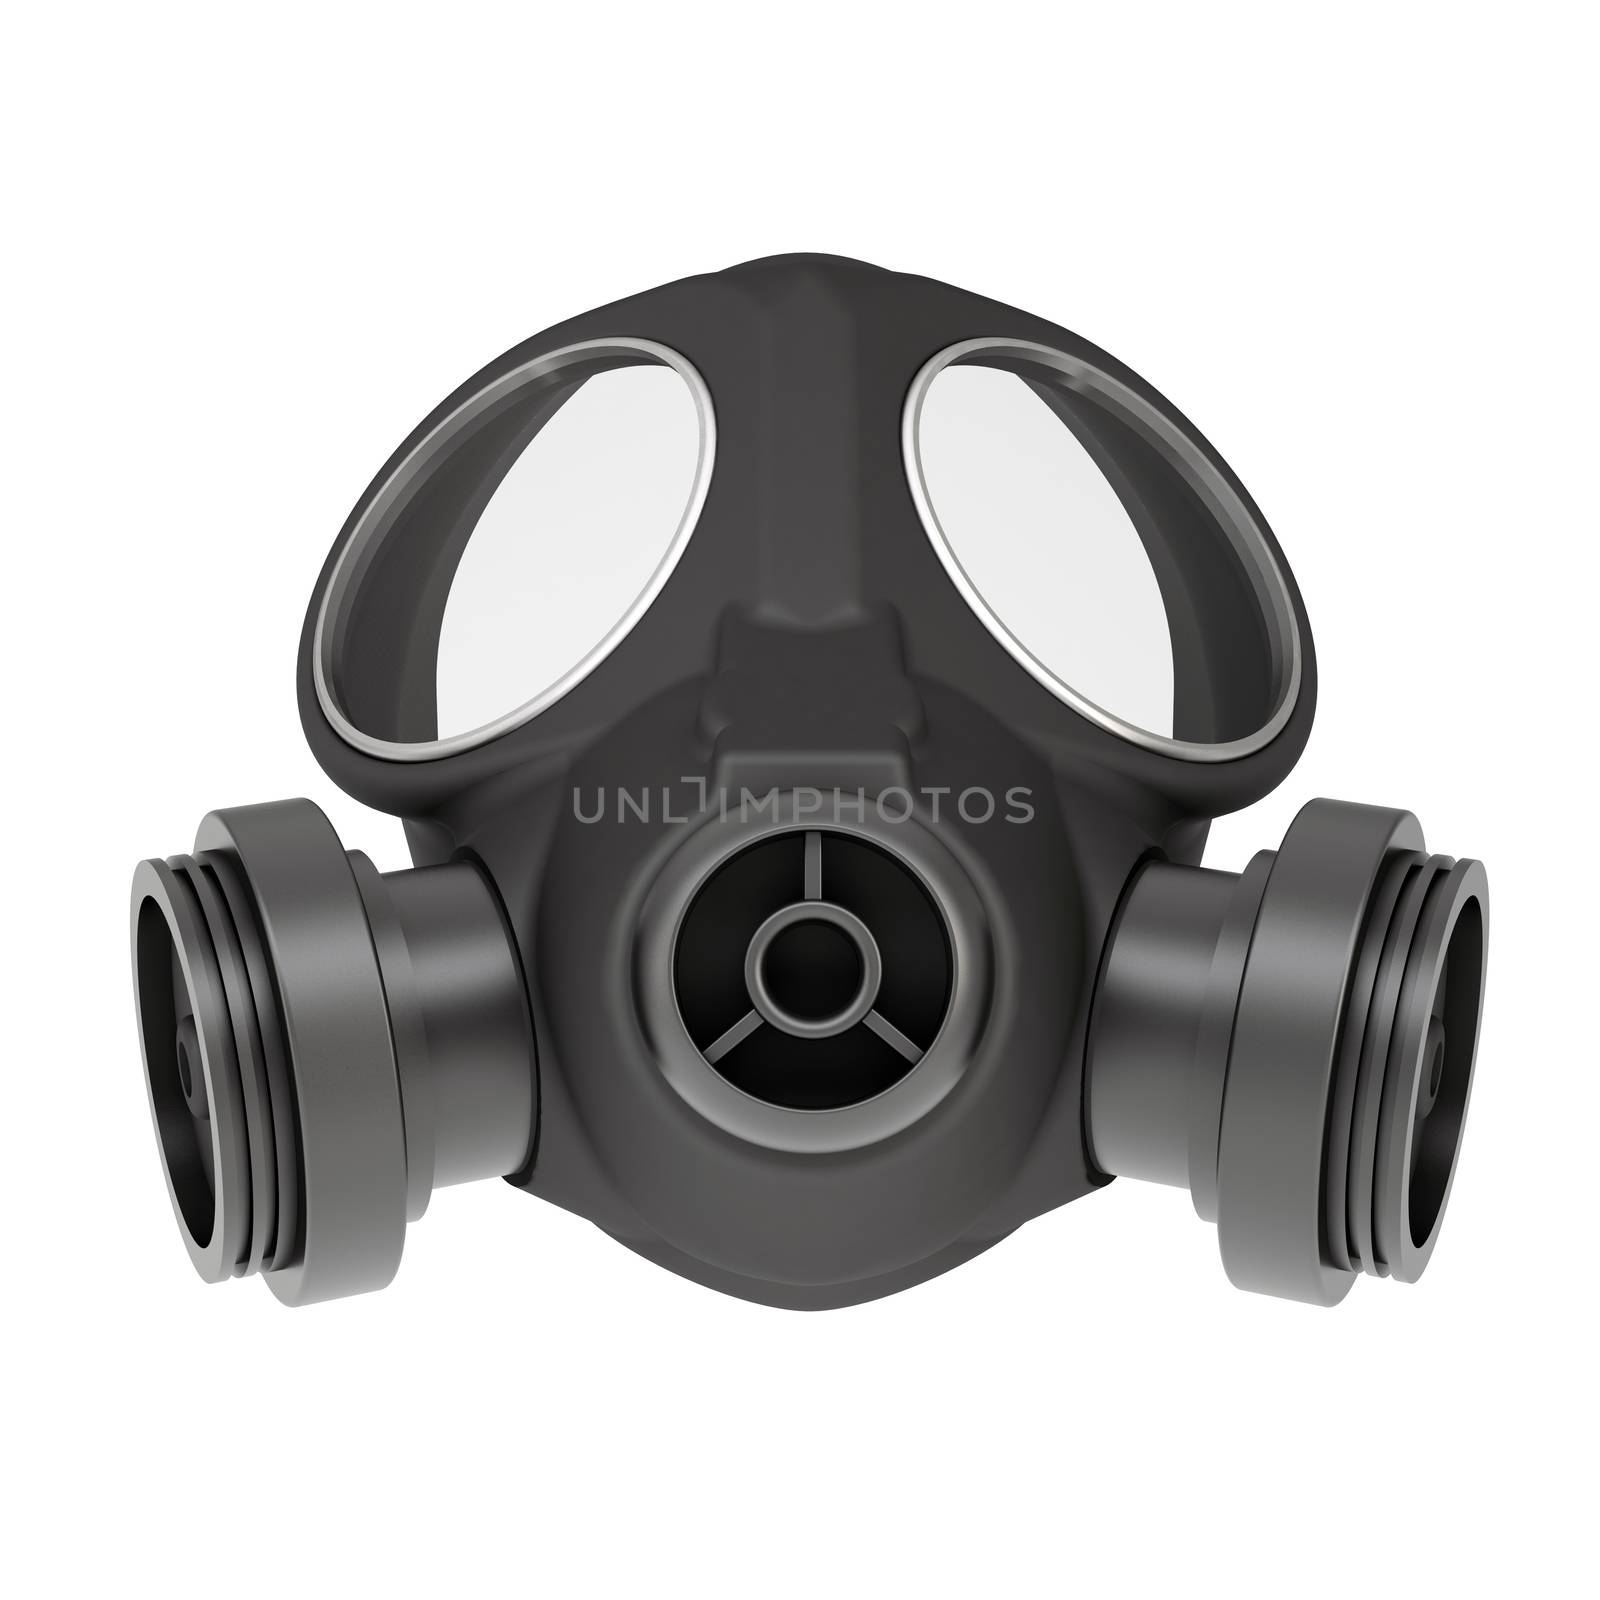 Gas mask by cherezoff